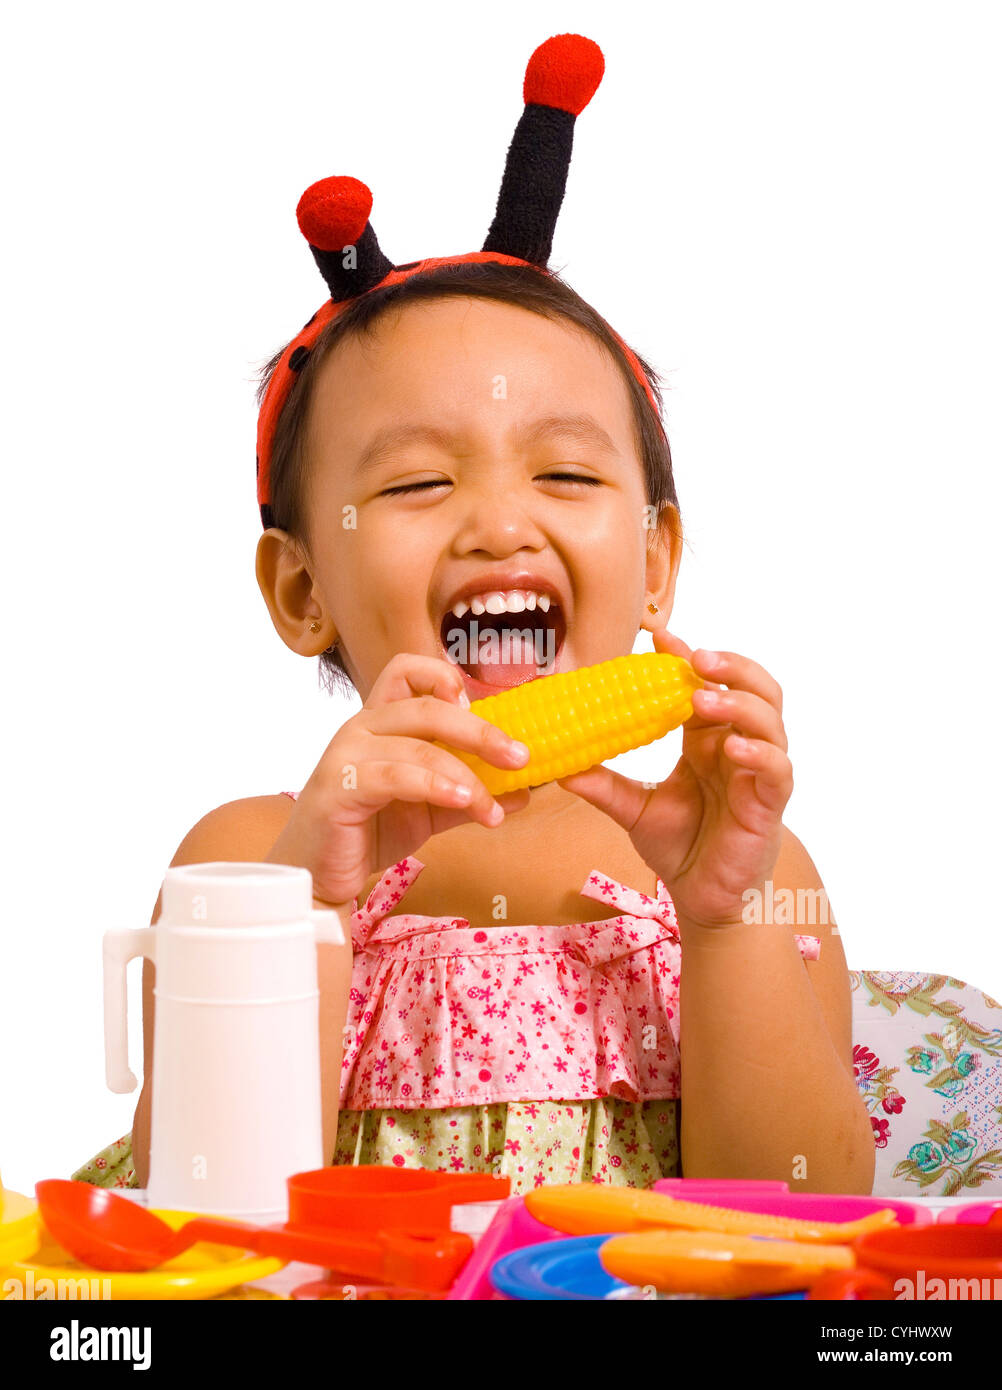 Girl Playing With Toy de l'alimentation et fait semblant de manger le maïs Banque D'Images